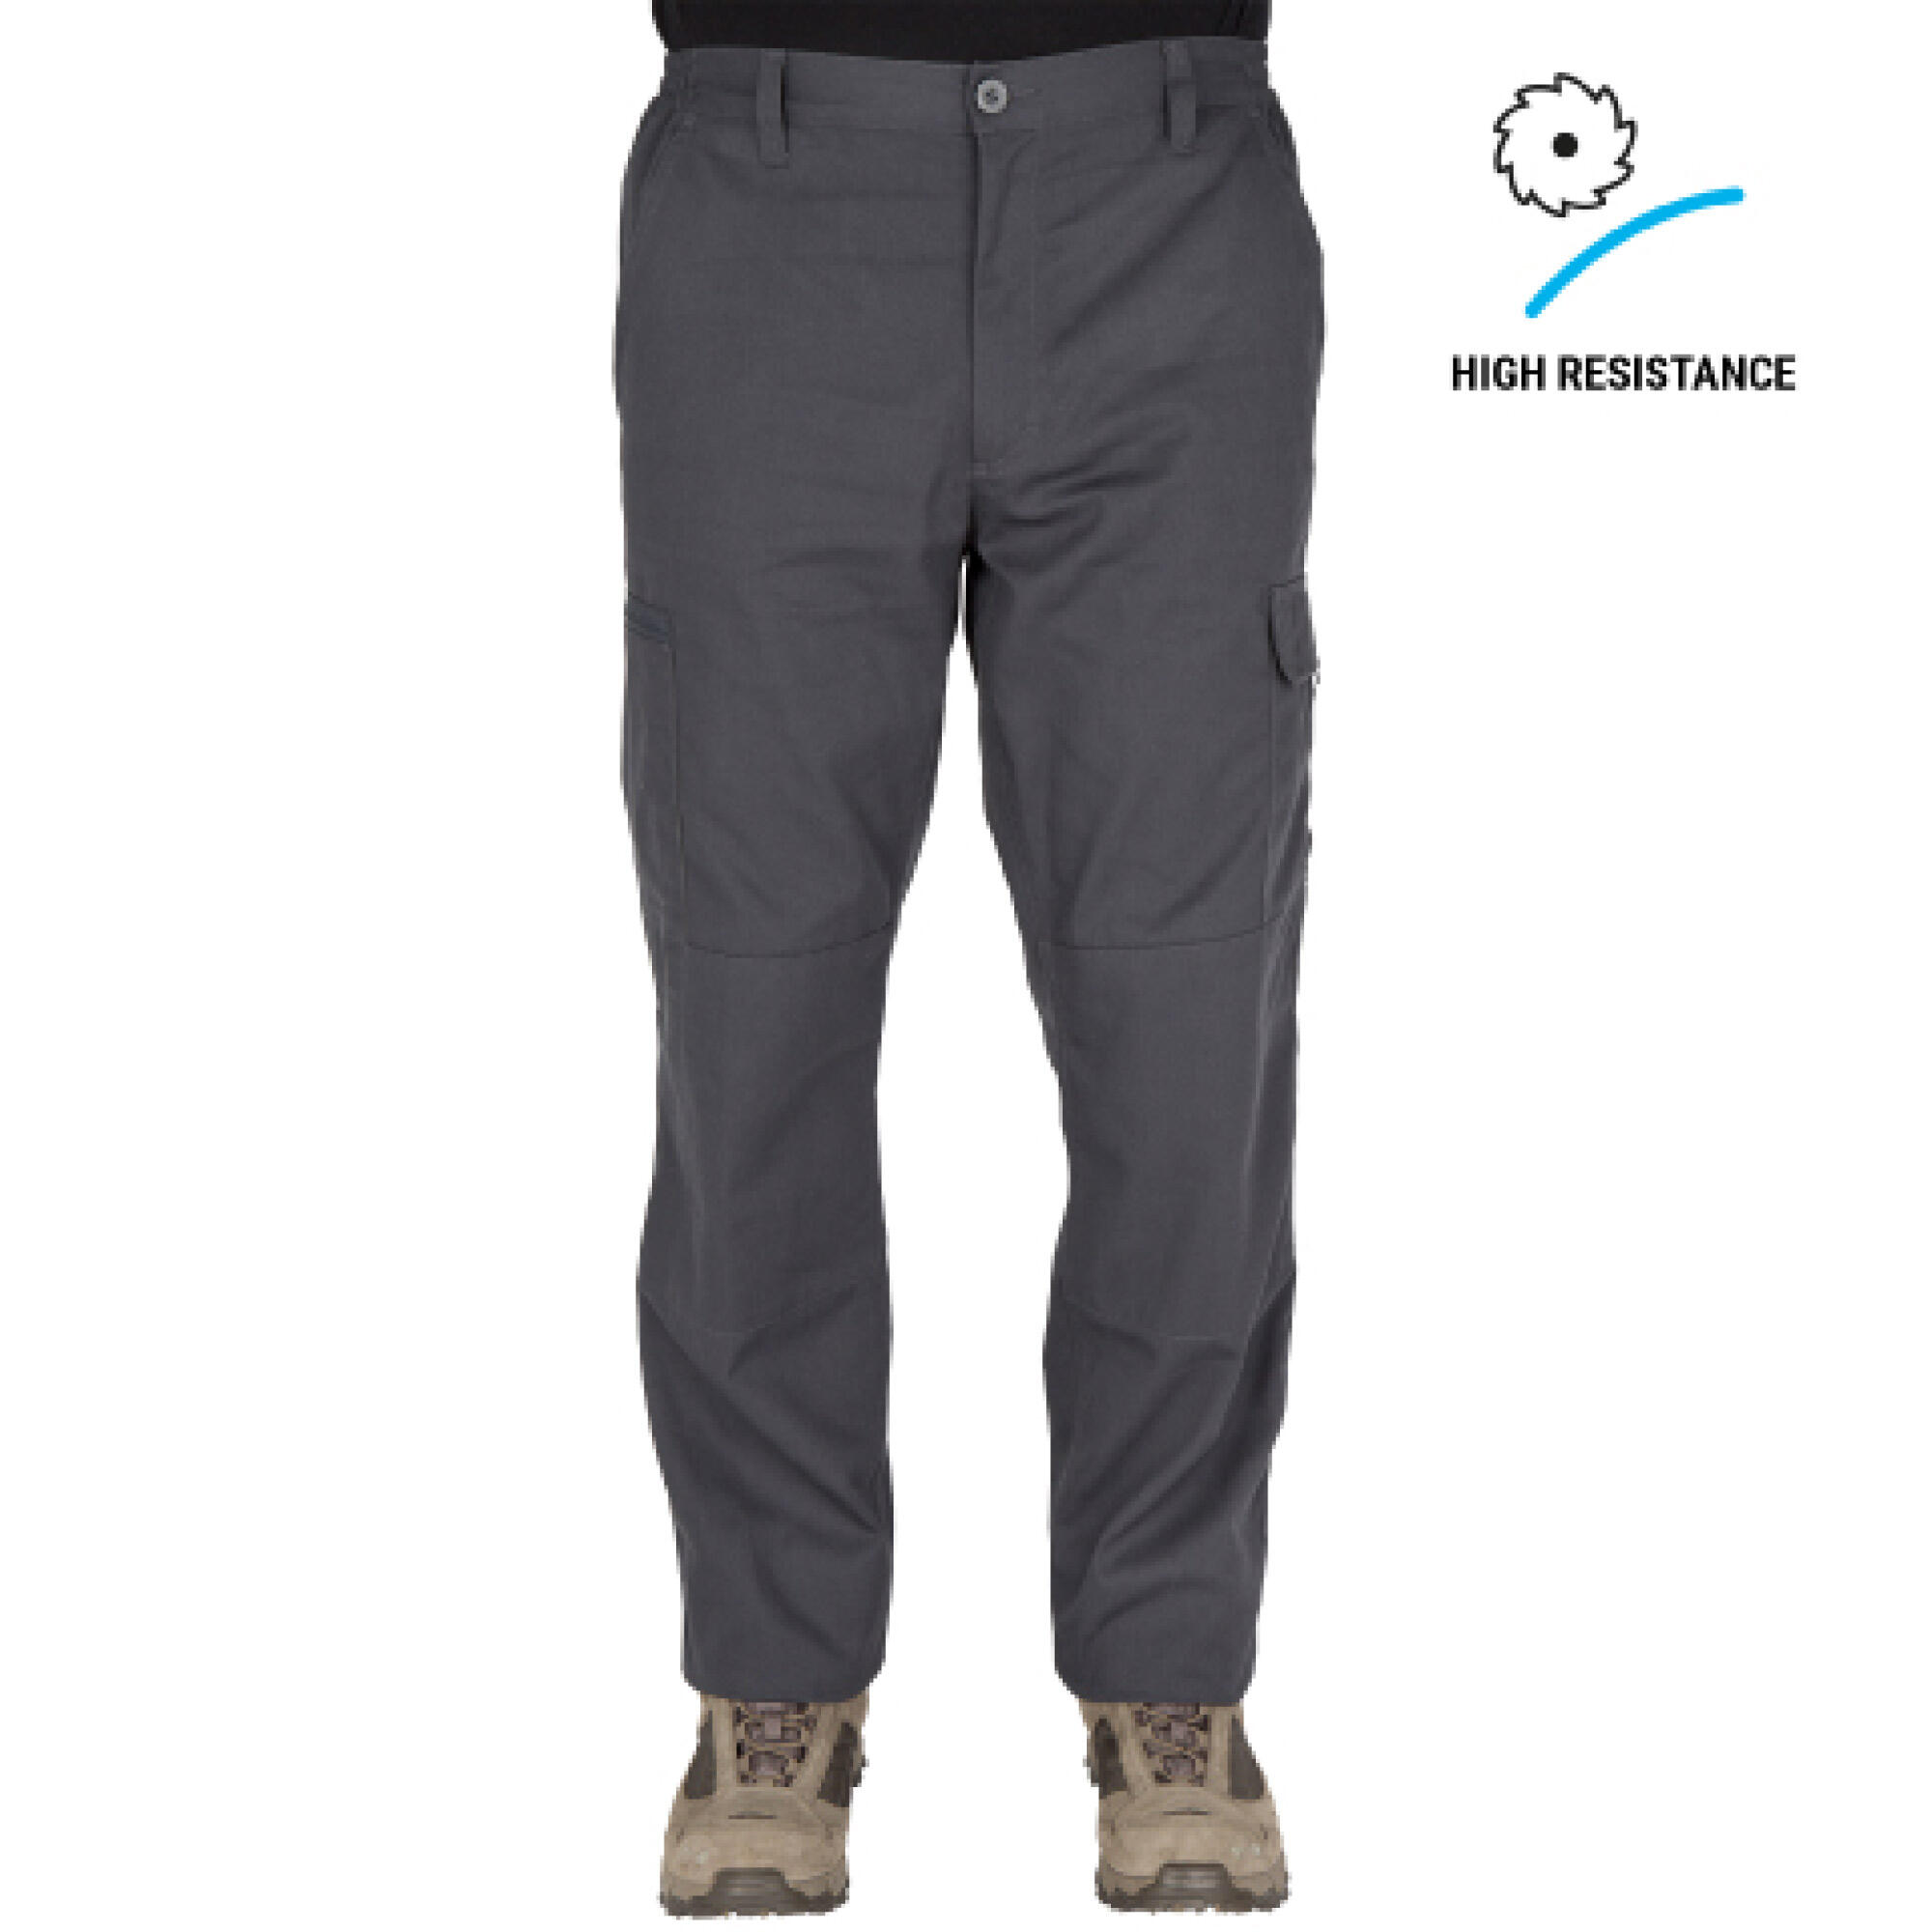 Decathlon Men's Cargo Pant  Men's Breathable Trousers Pants SG